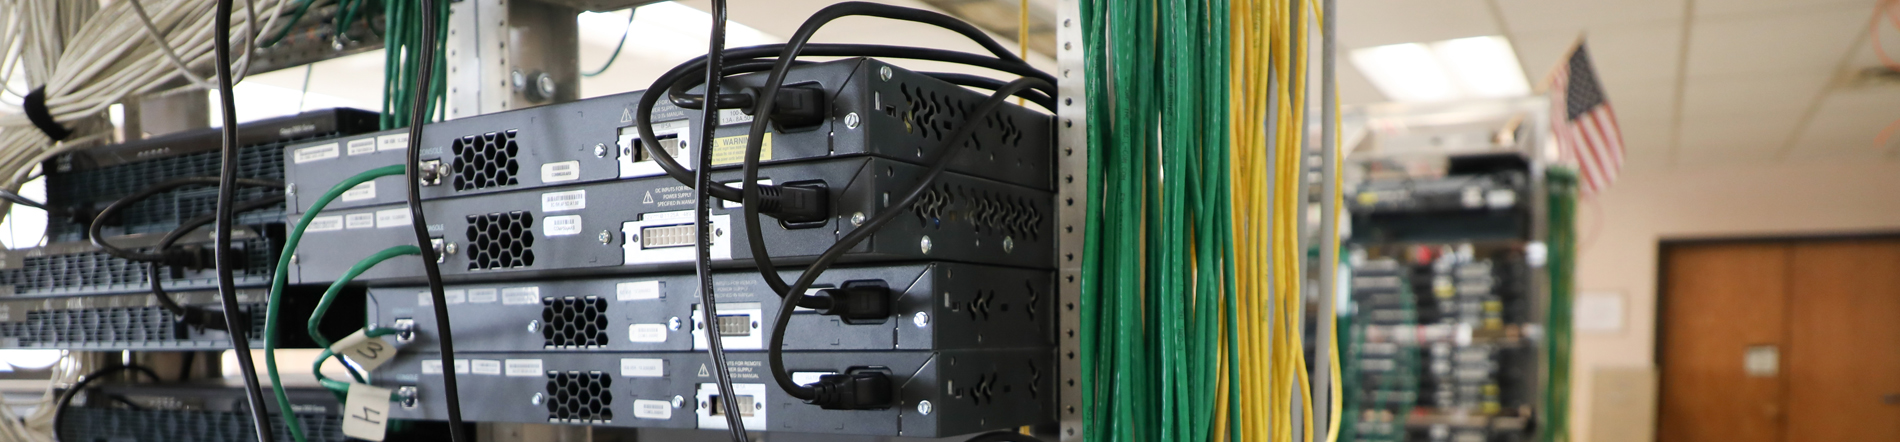 Server racks in the network room